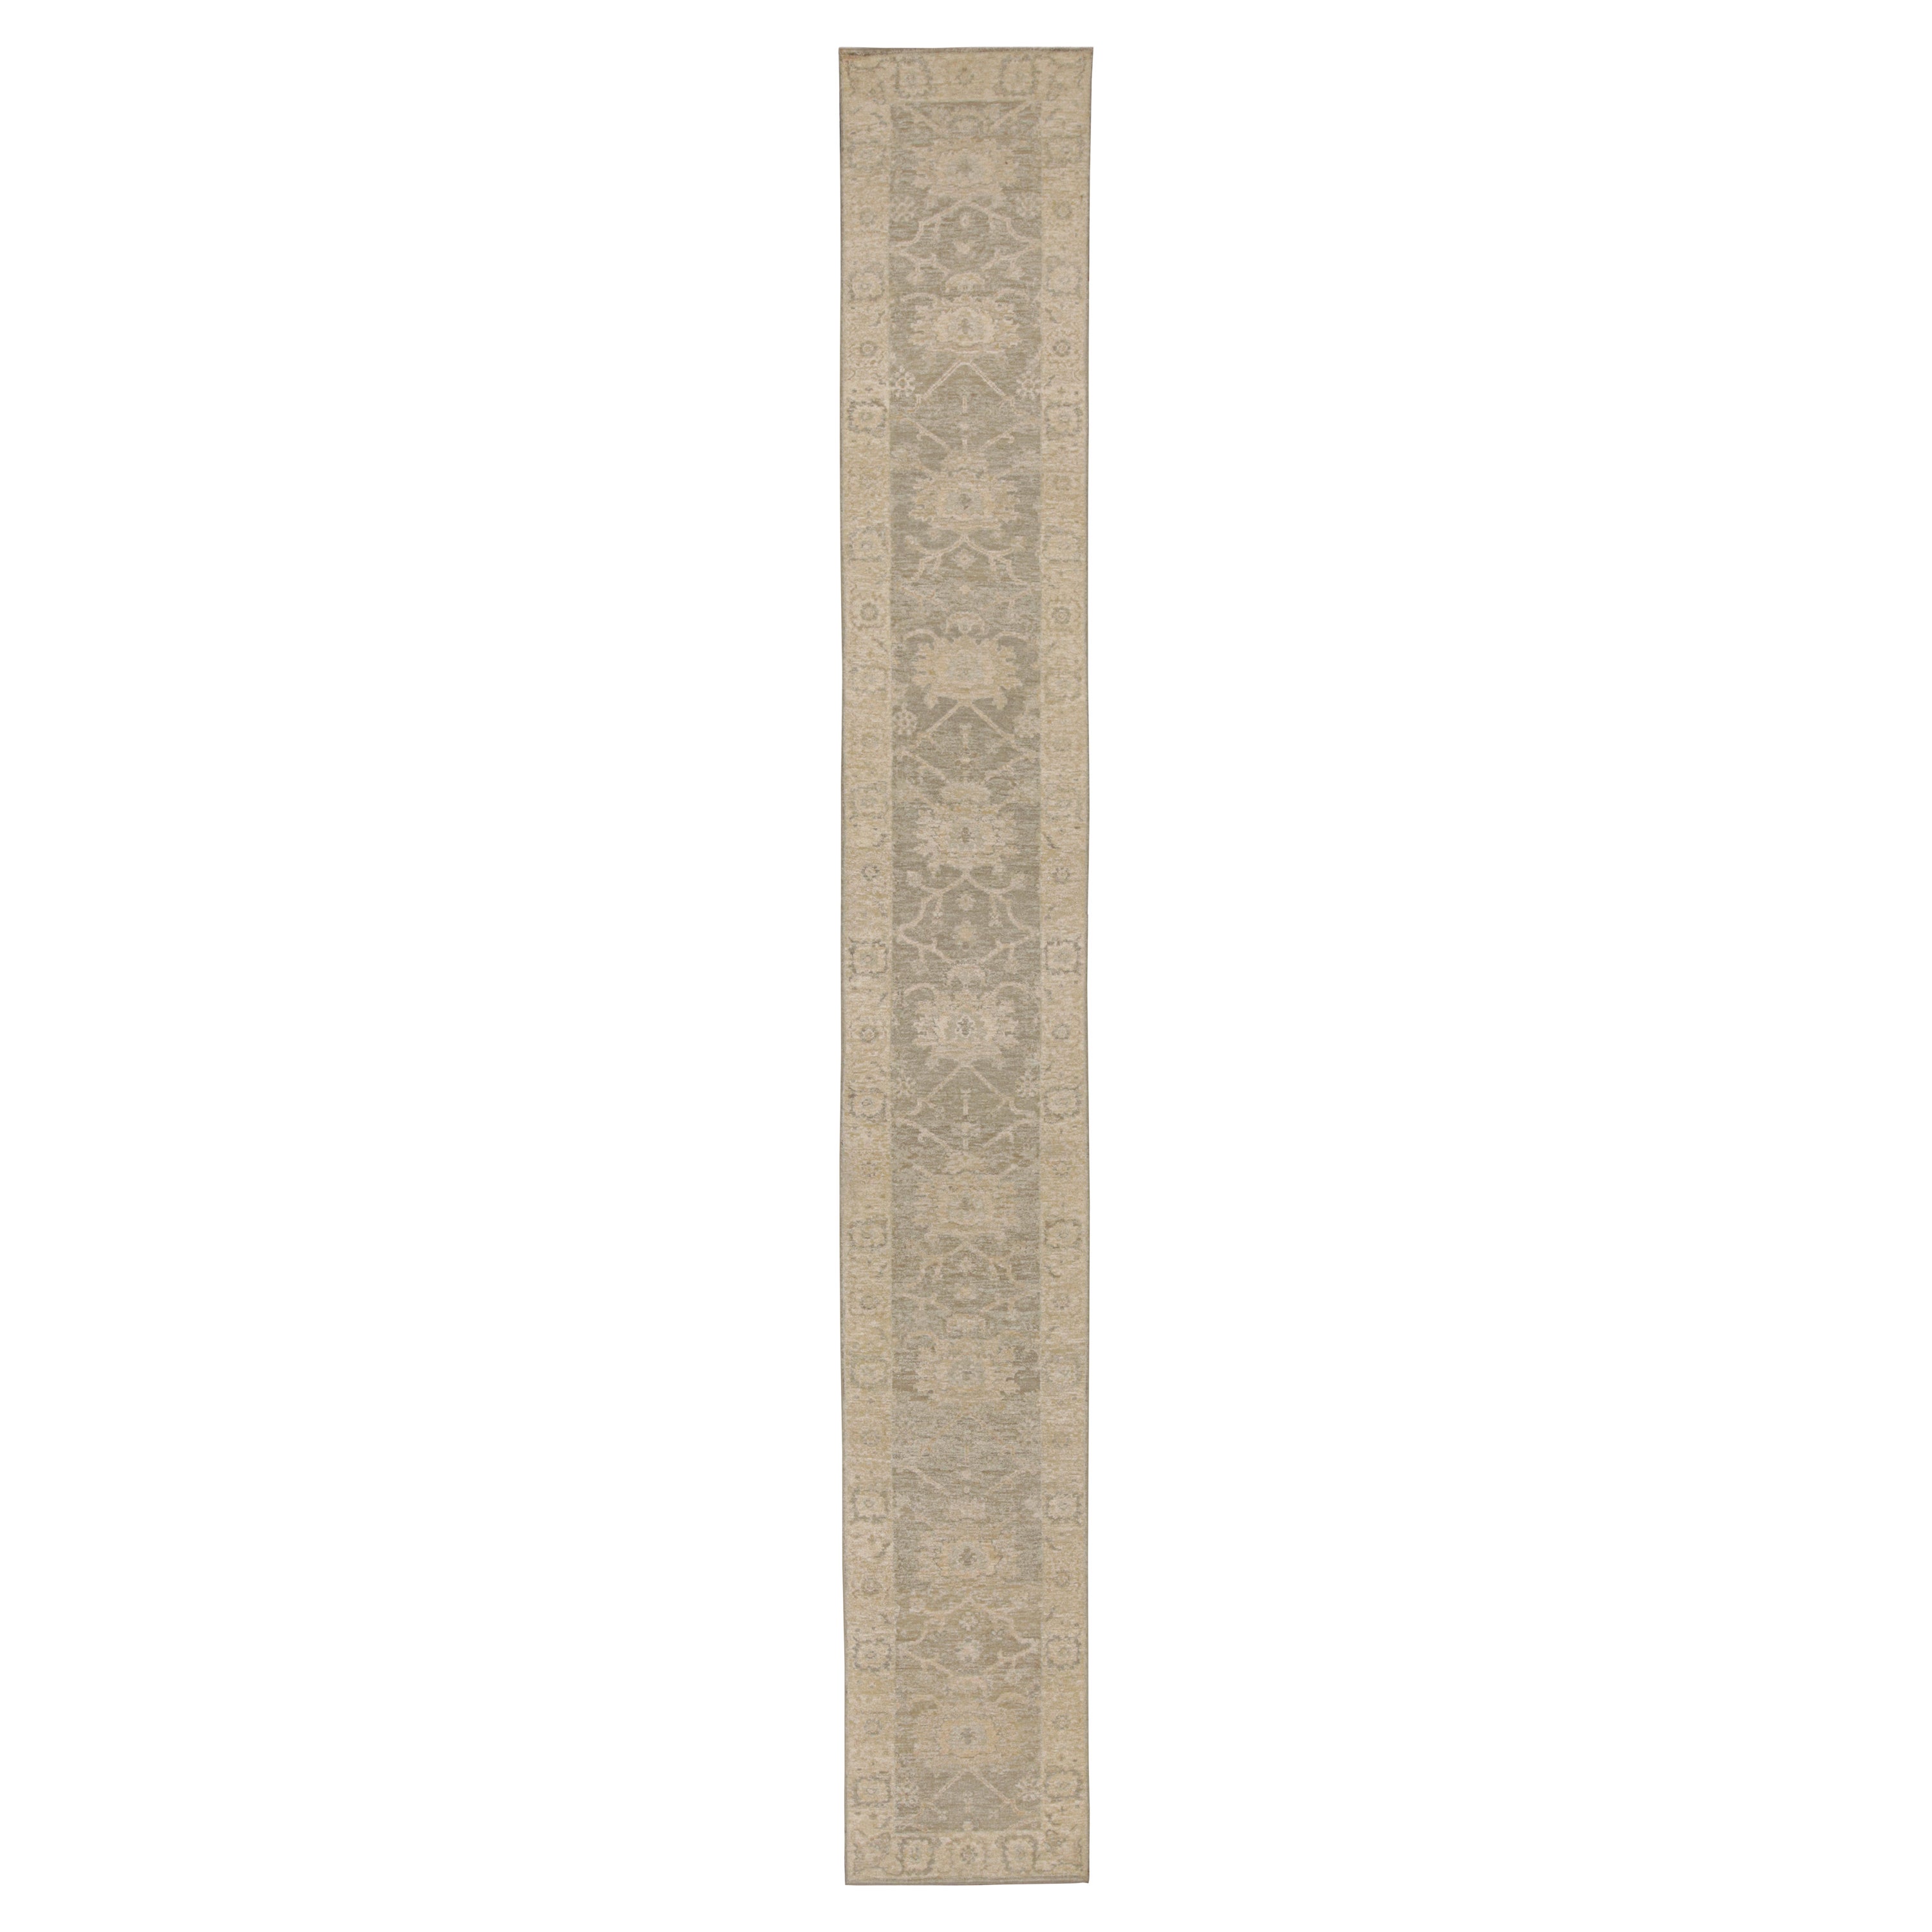 Tapis de style Oushak de Rug & Kilim en beige/brun, avec motifs floraux